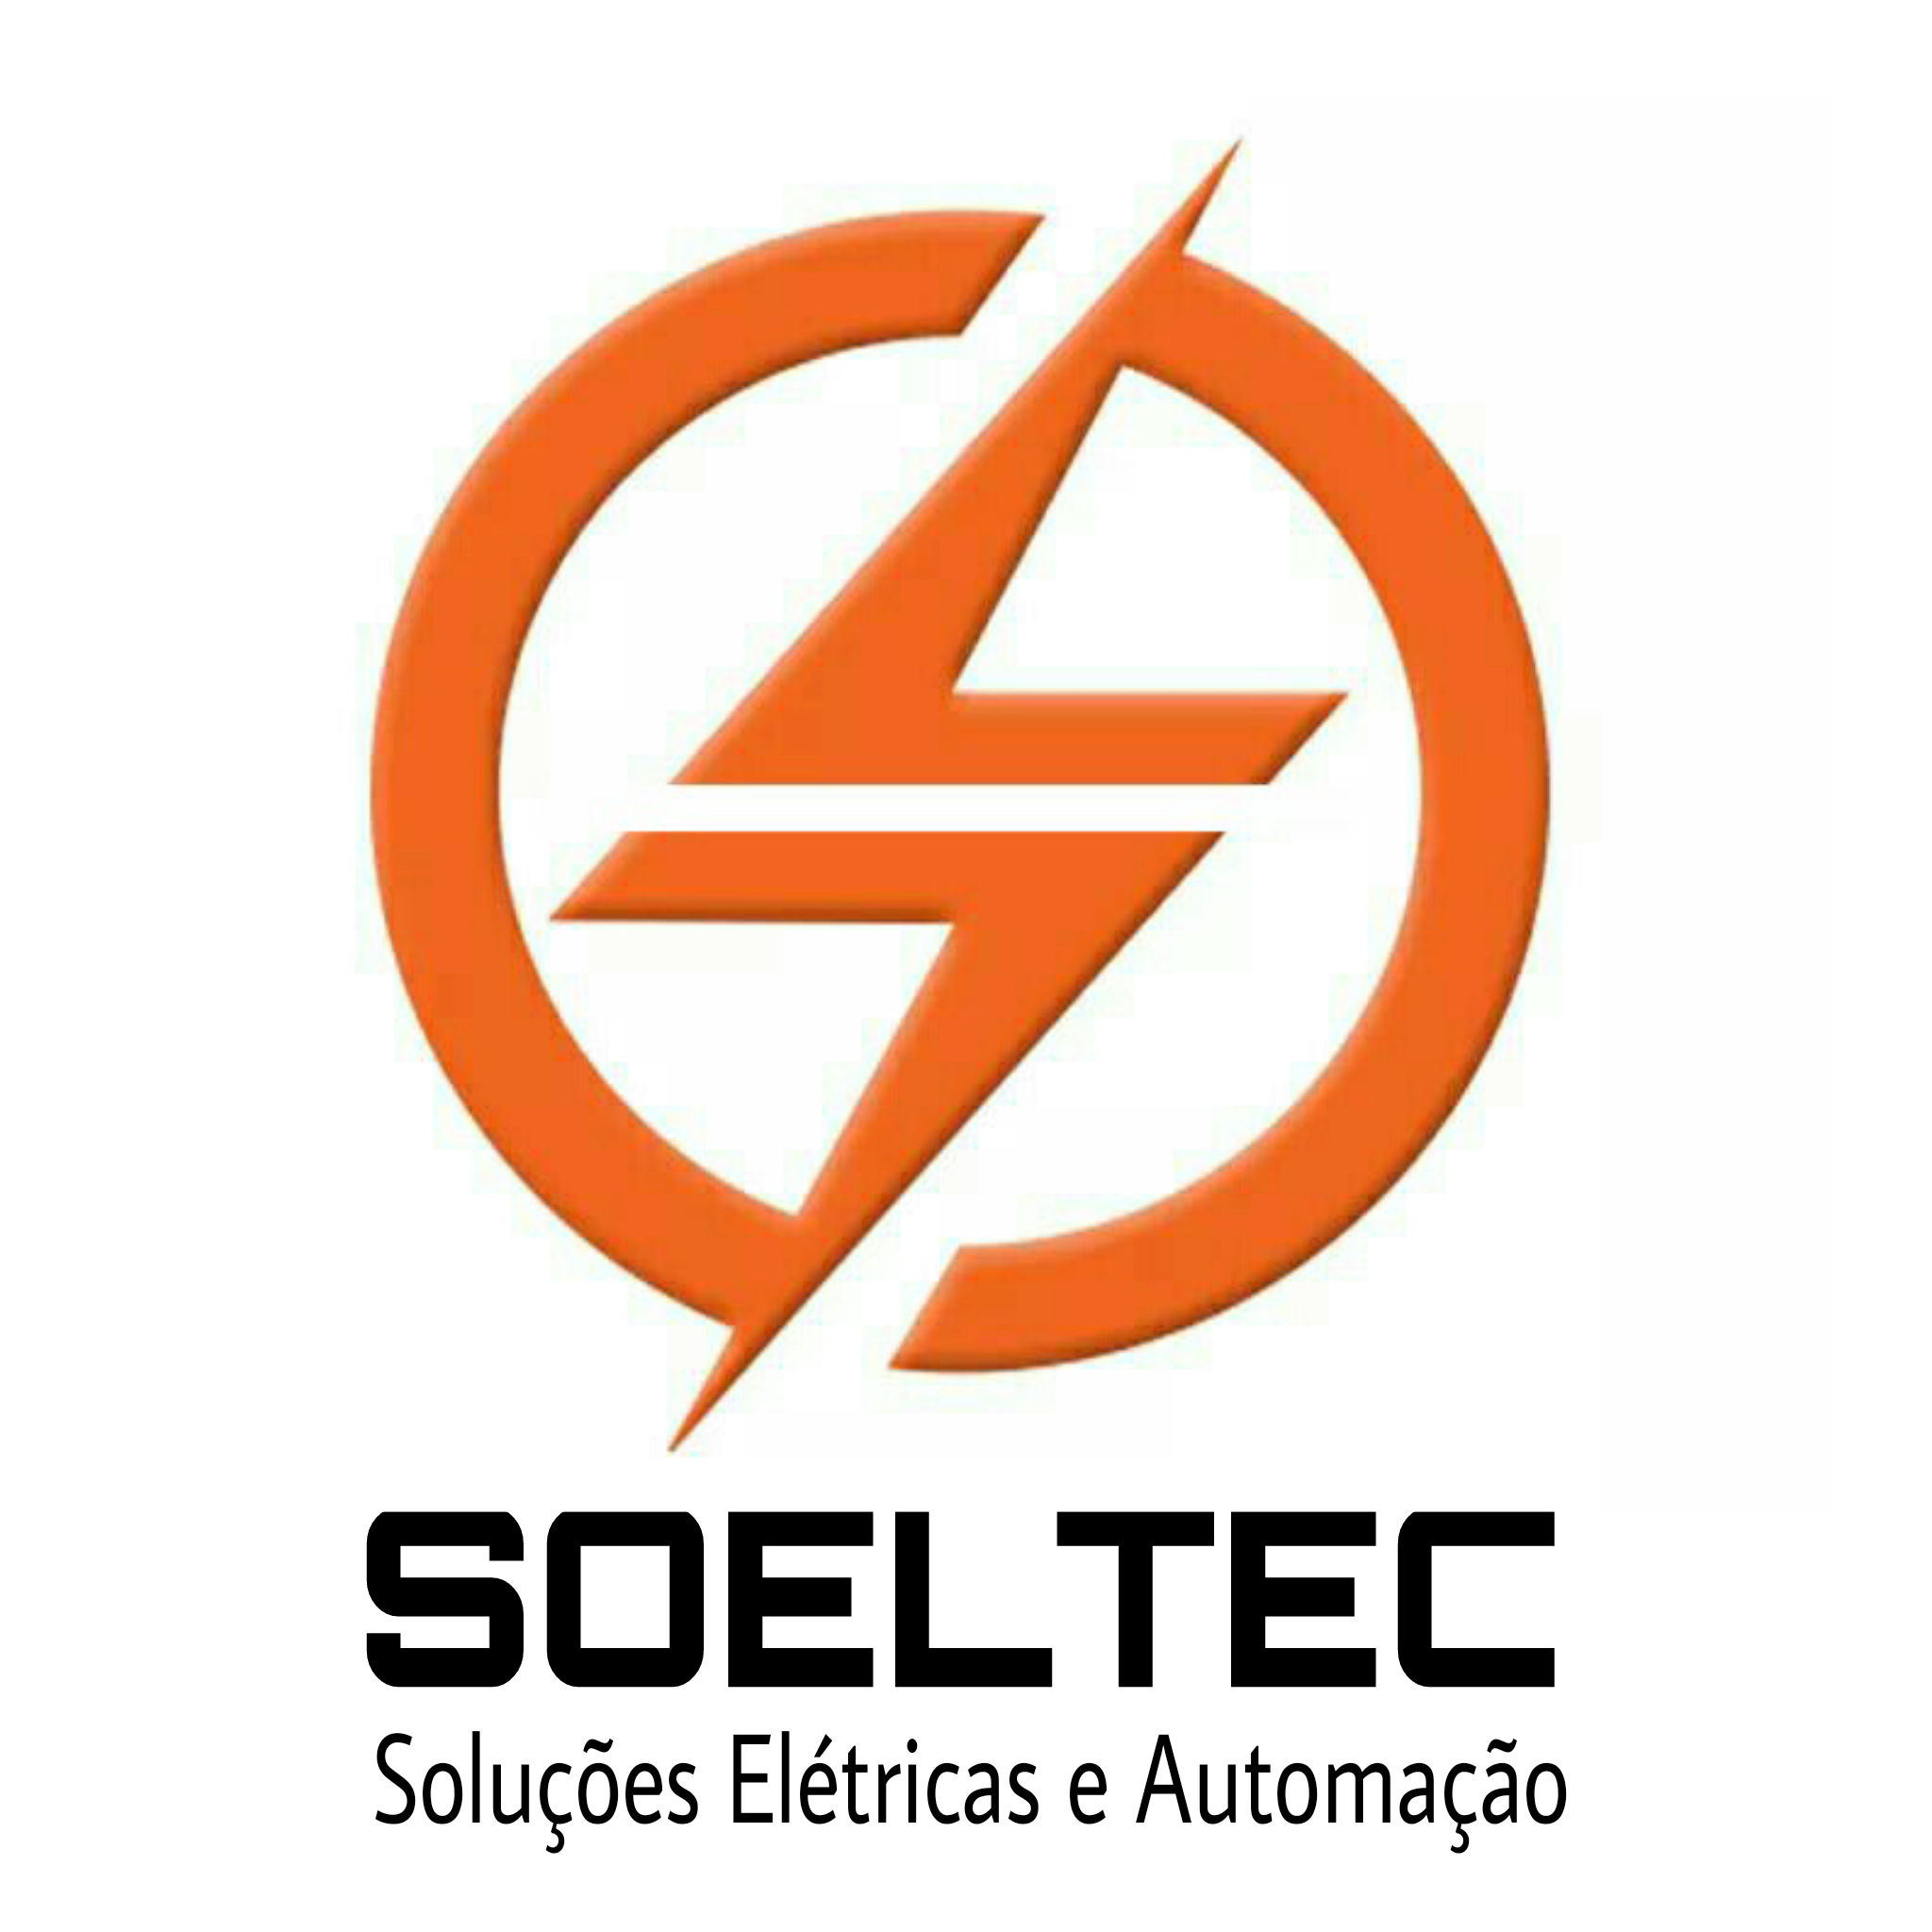 SOELTEC SOLUÇÕES ELÉTRICAS - Painéis - Rio de Janeiro, RJ